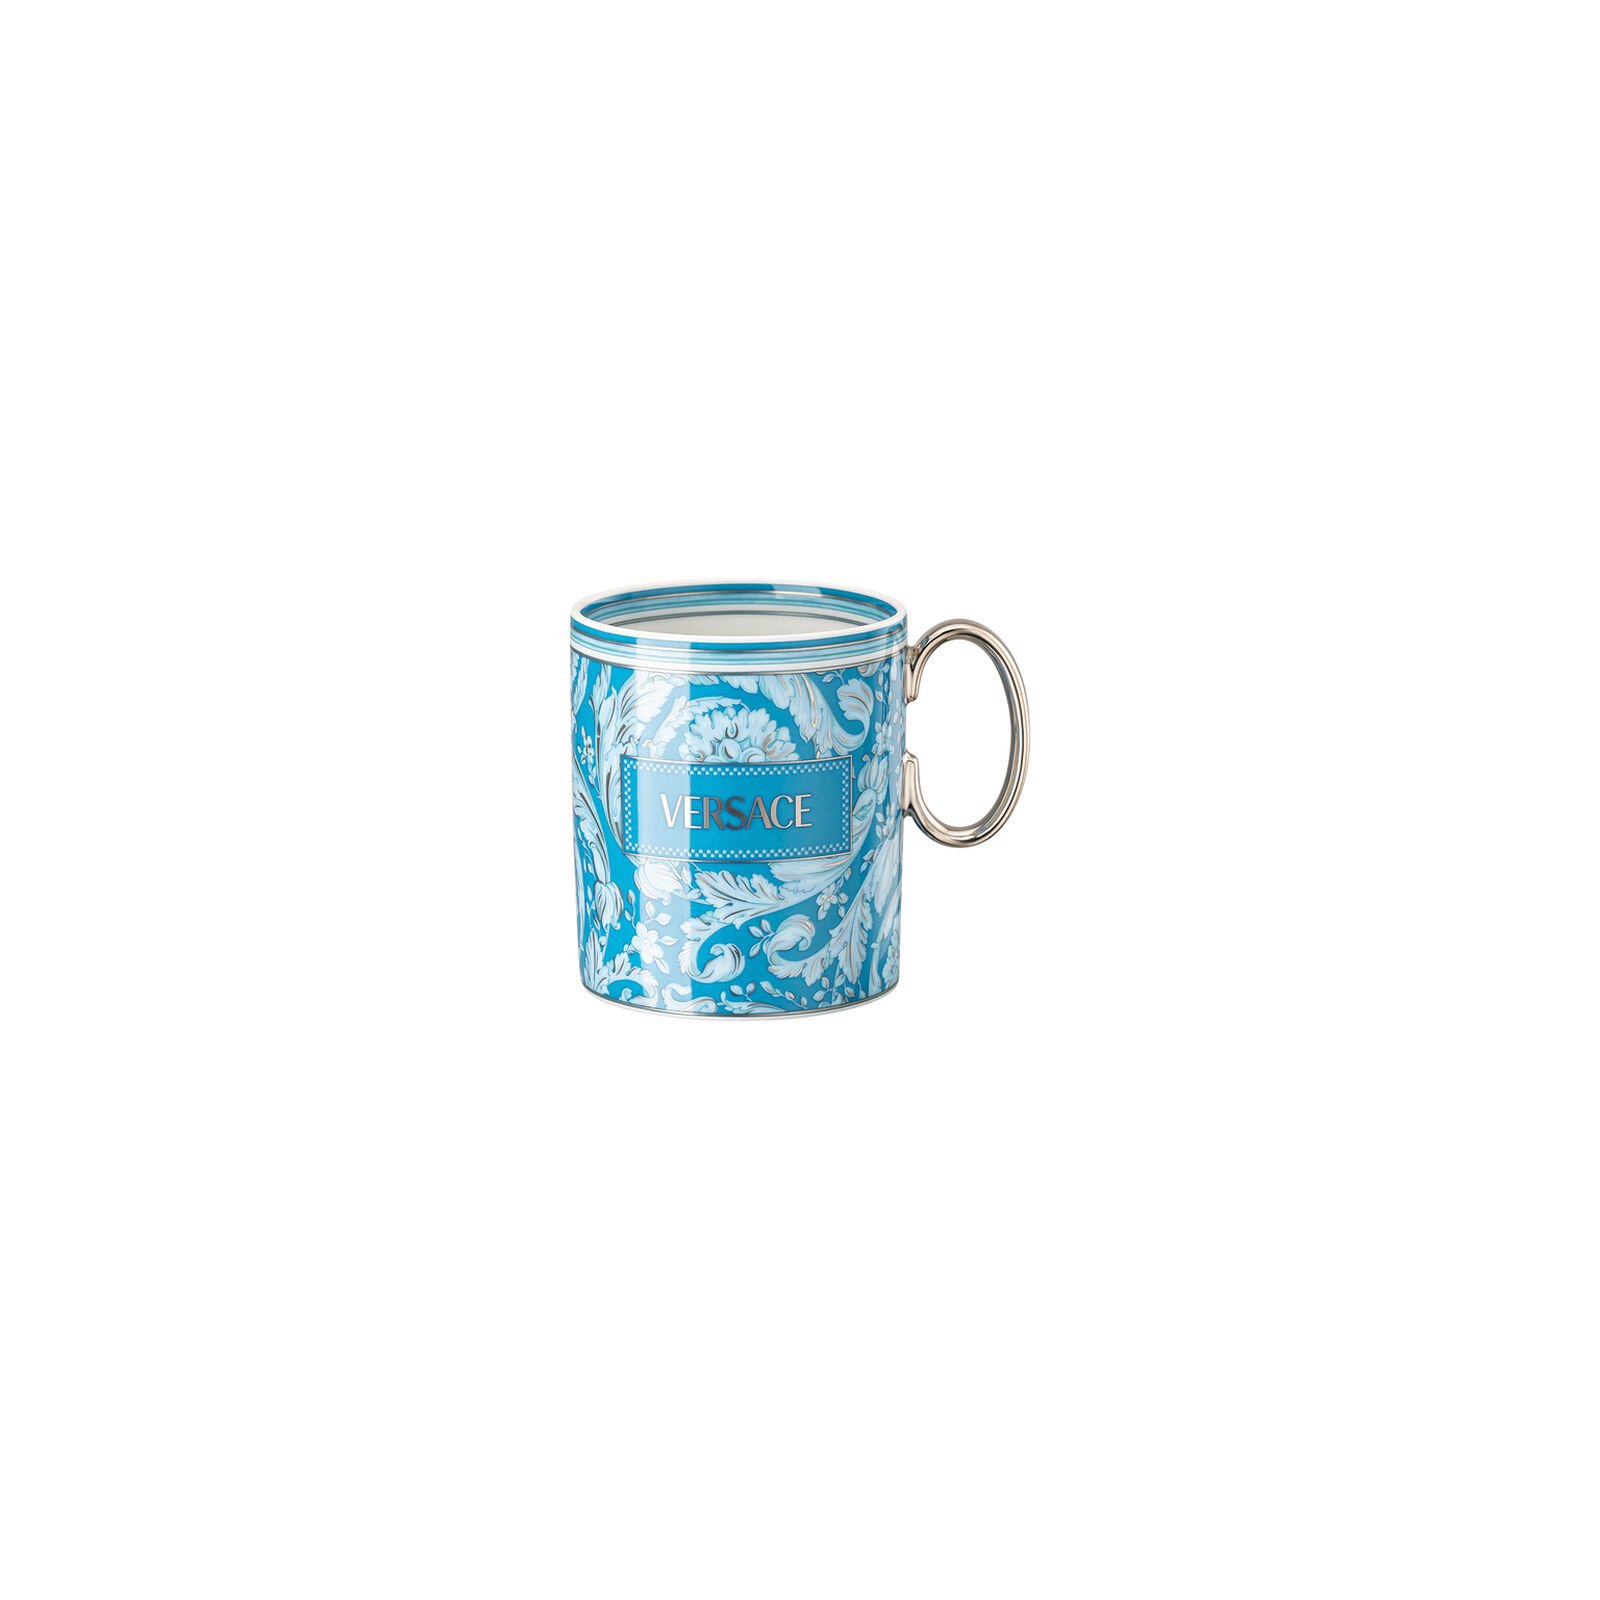 Versace Rosenthal Barocco Barocco Teal mug with handle